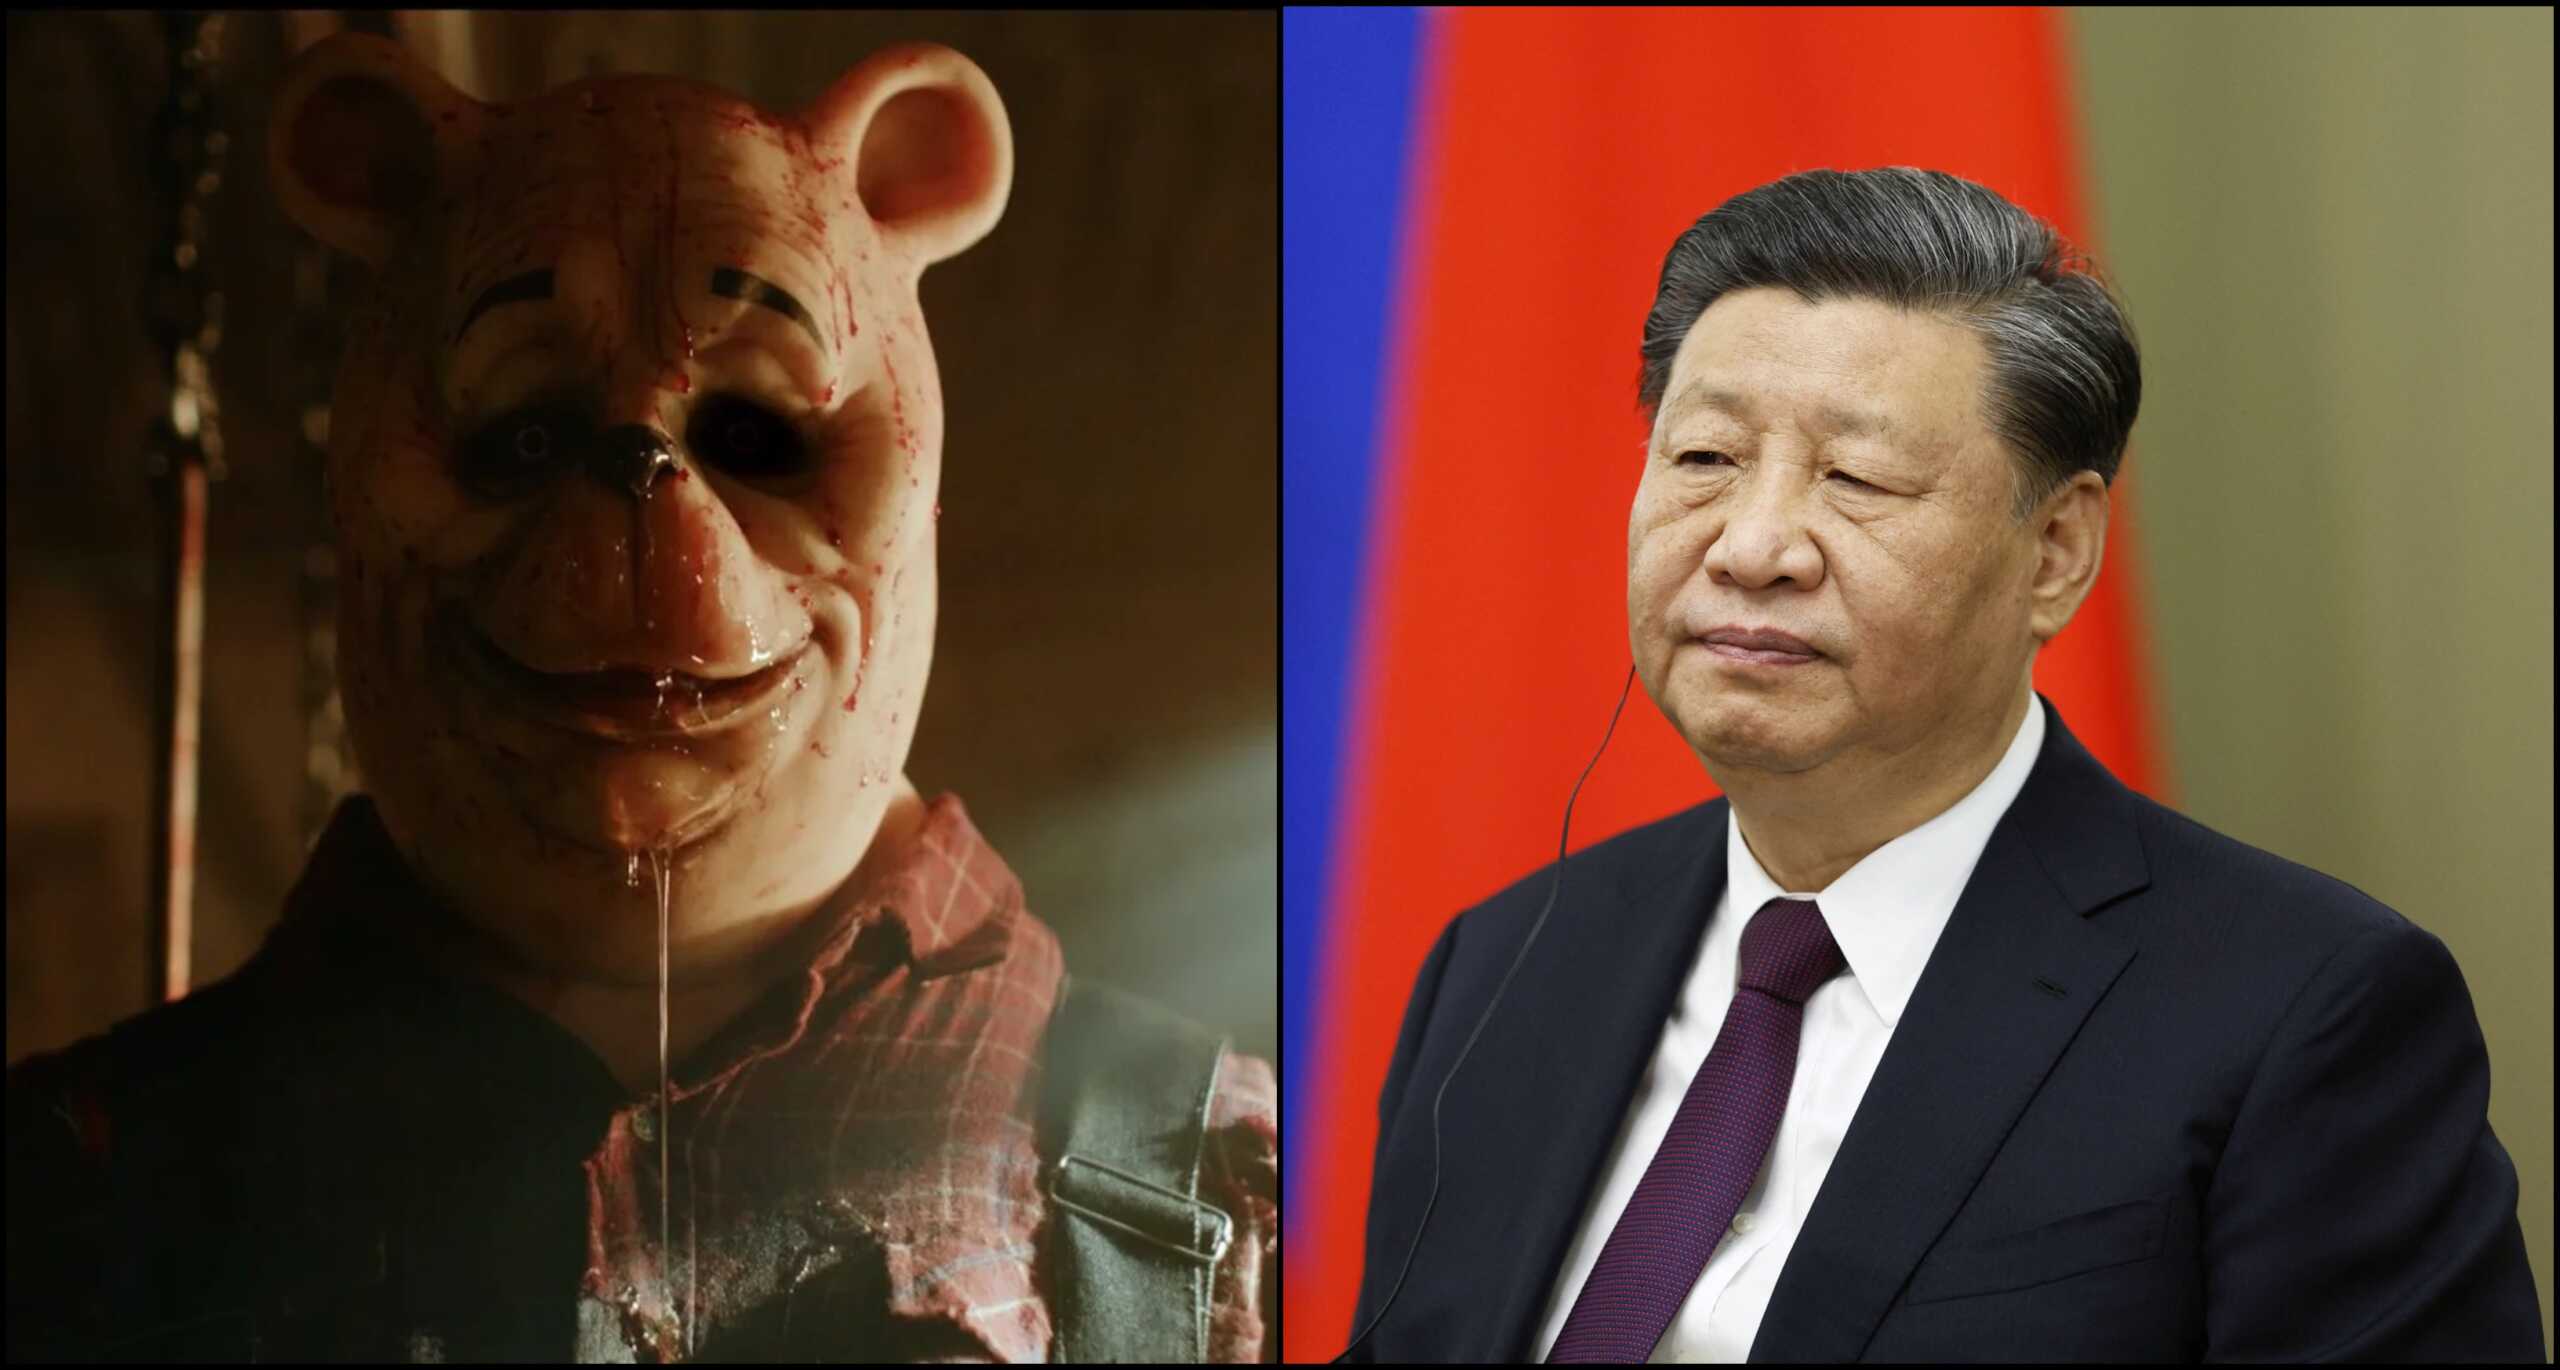 Χονγκ Κονγκ: Λογοκρίθηκε η νέα ταινία με τον Γουίνι λόγω των συγκρίσεων με τον Κινέζο πρόεδρο Σι Τζινπίνγκ